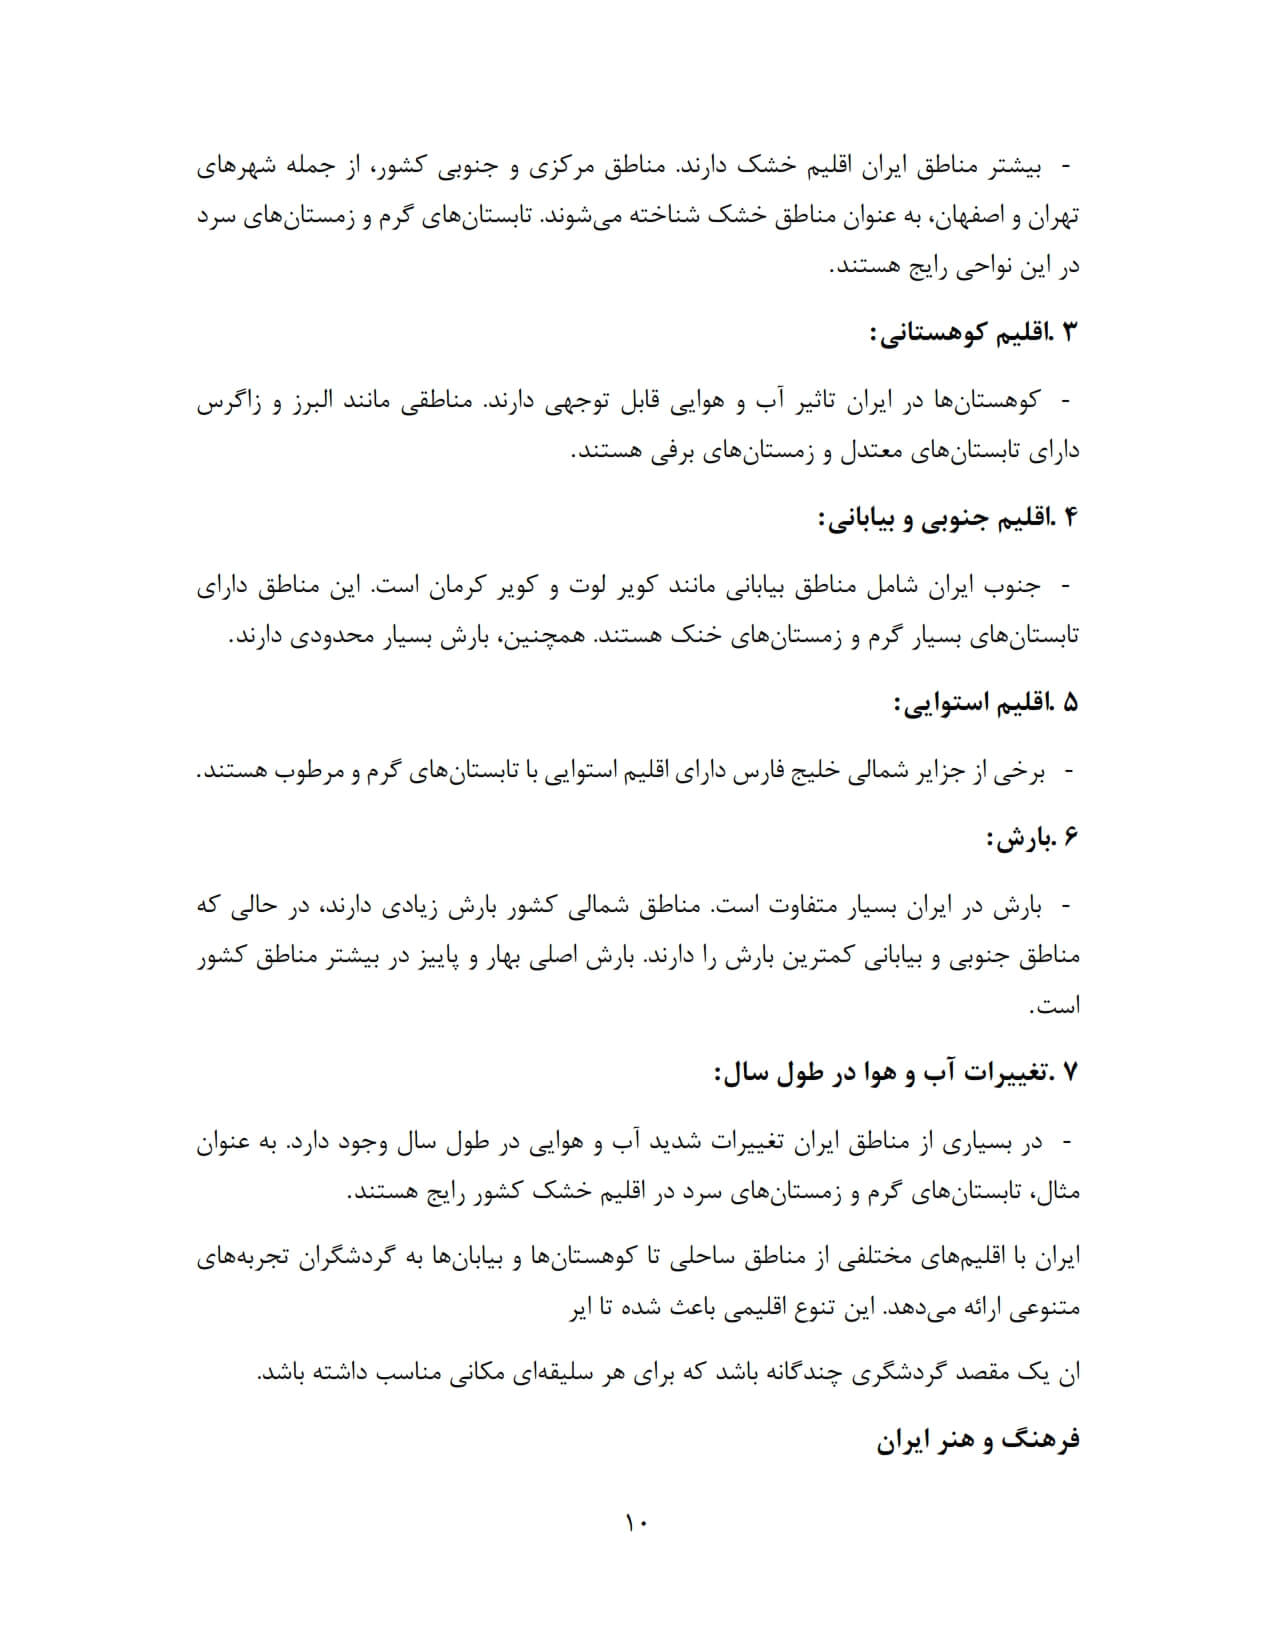 نمونه صفحات جزوه فارسی_0002